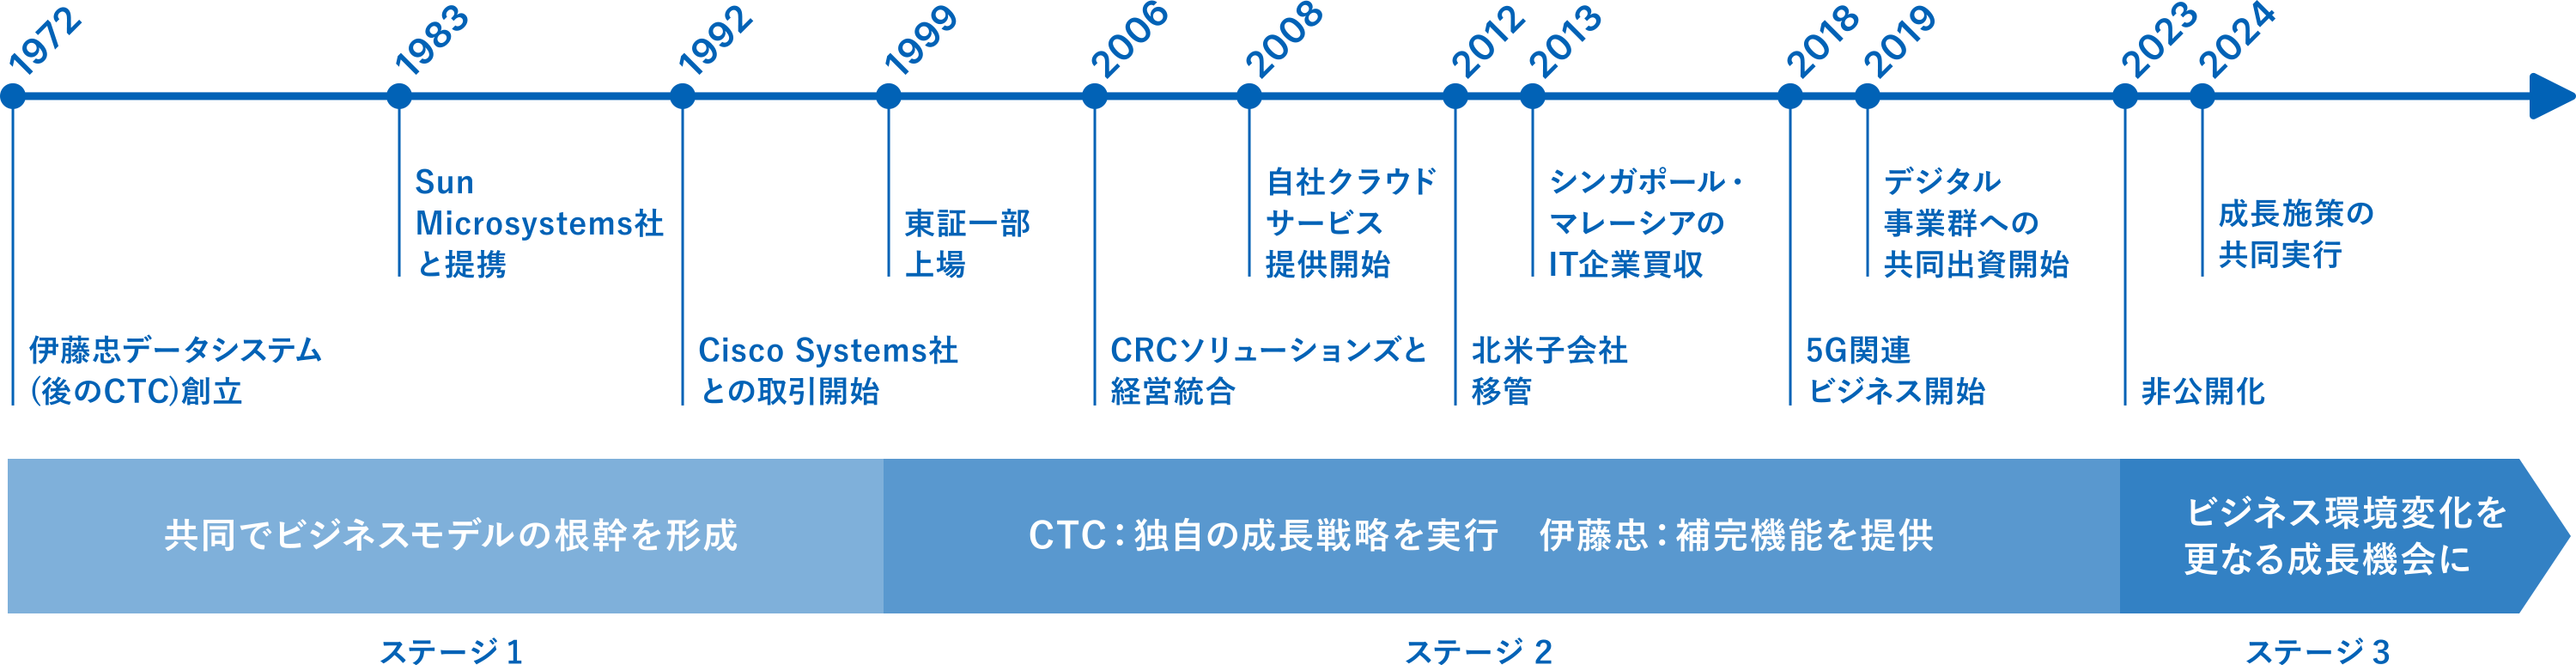 伊藤忠とCTCの成長の歩み